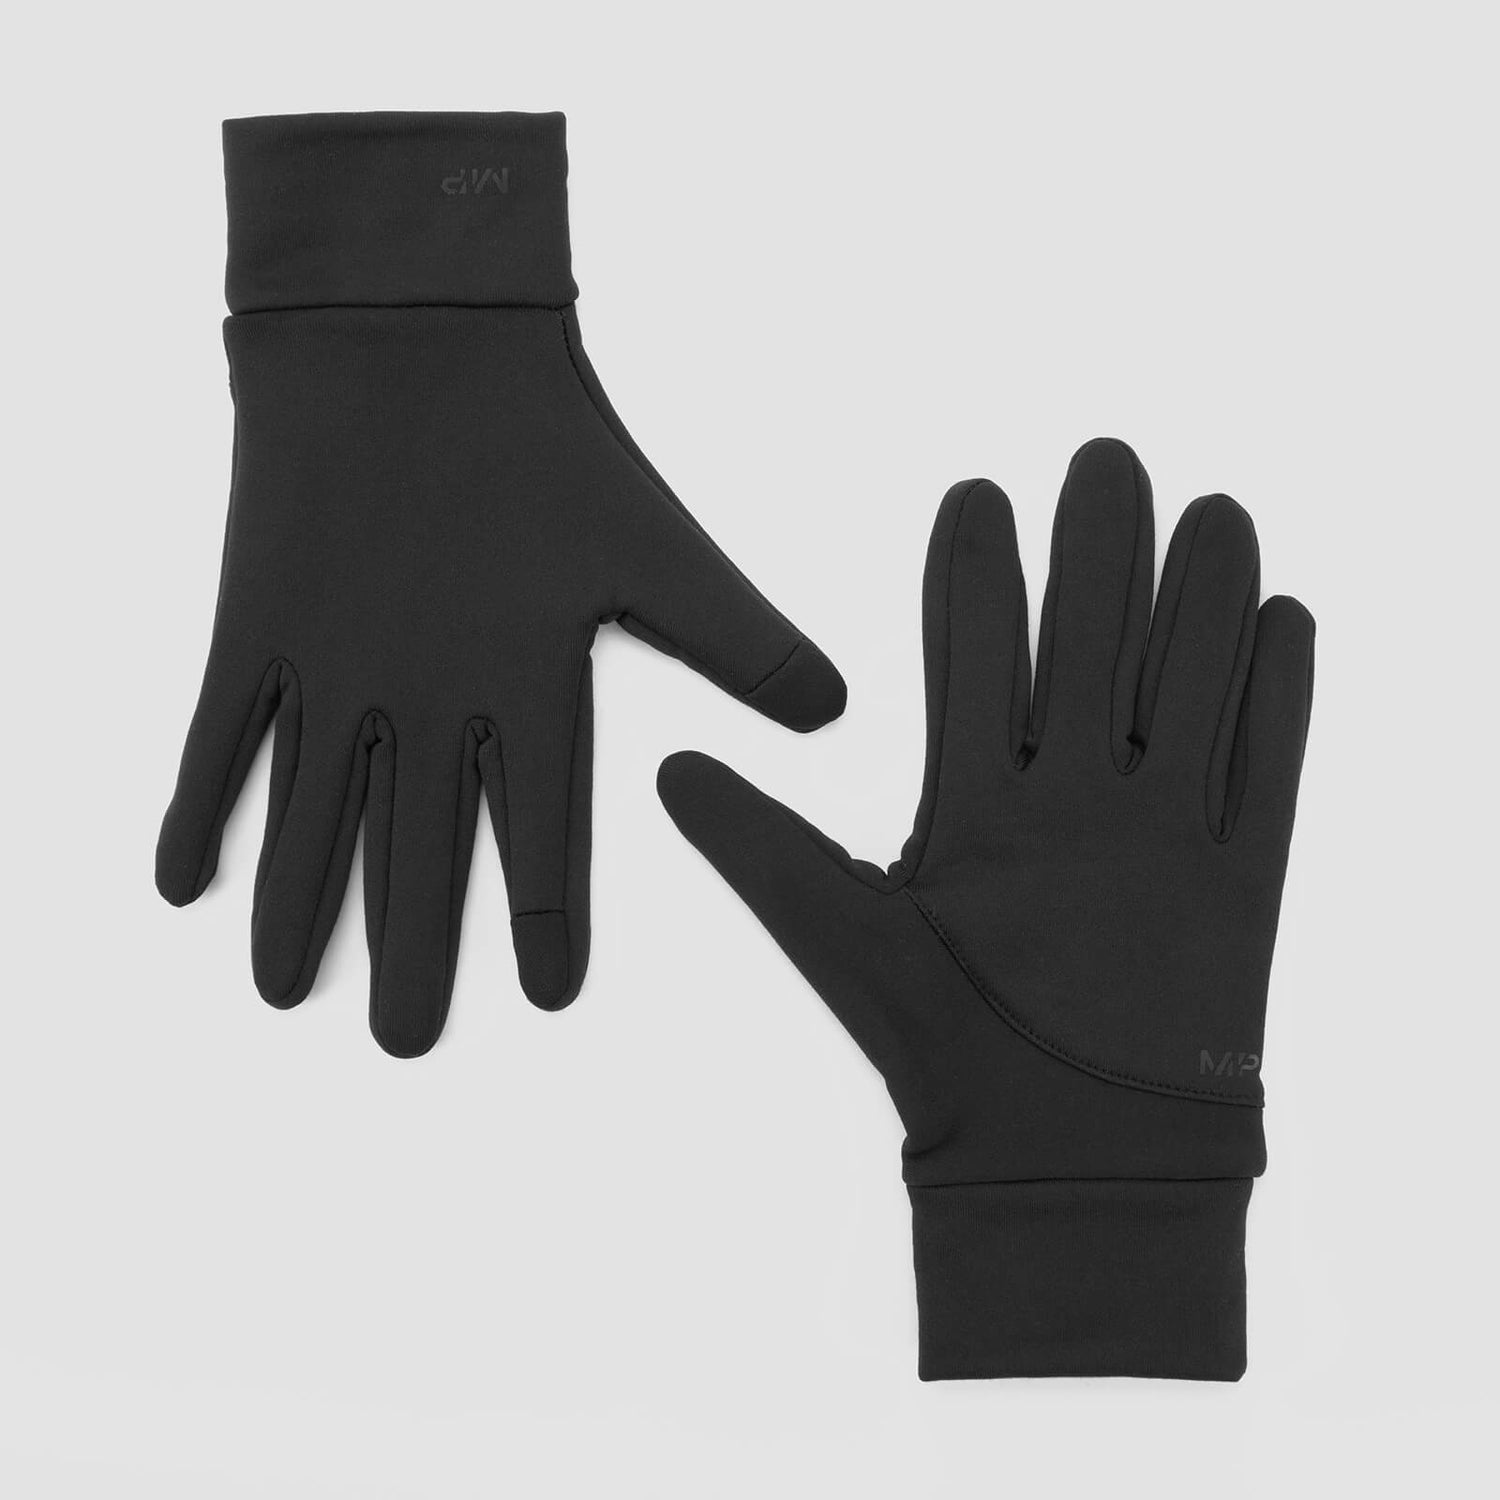 MP reflektirajuće rukavice za trčanje - crne - S/M